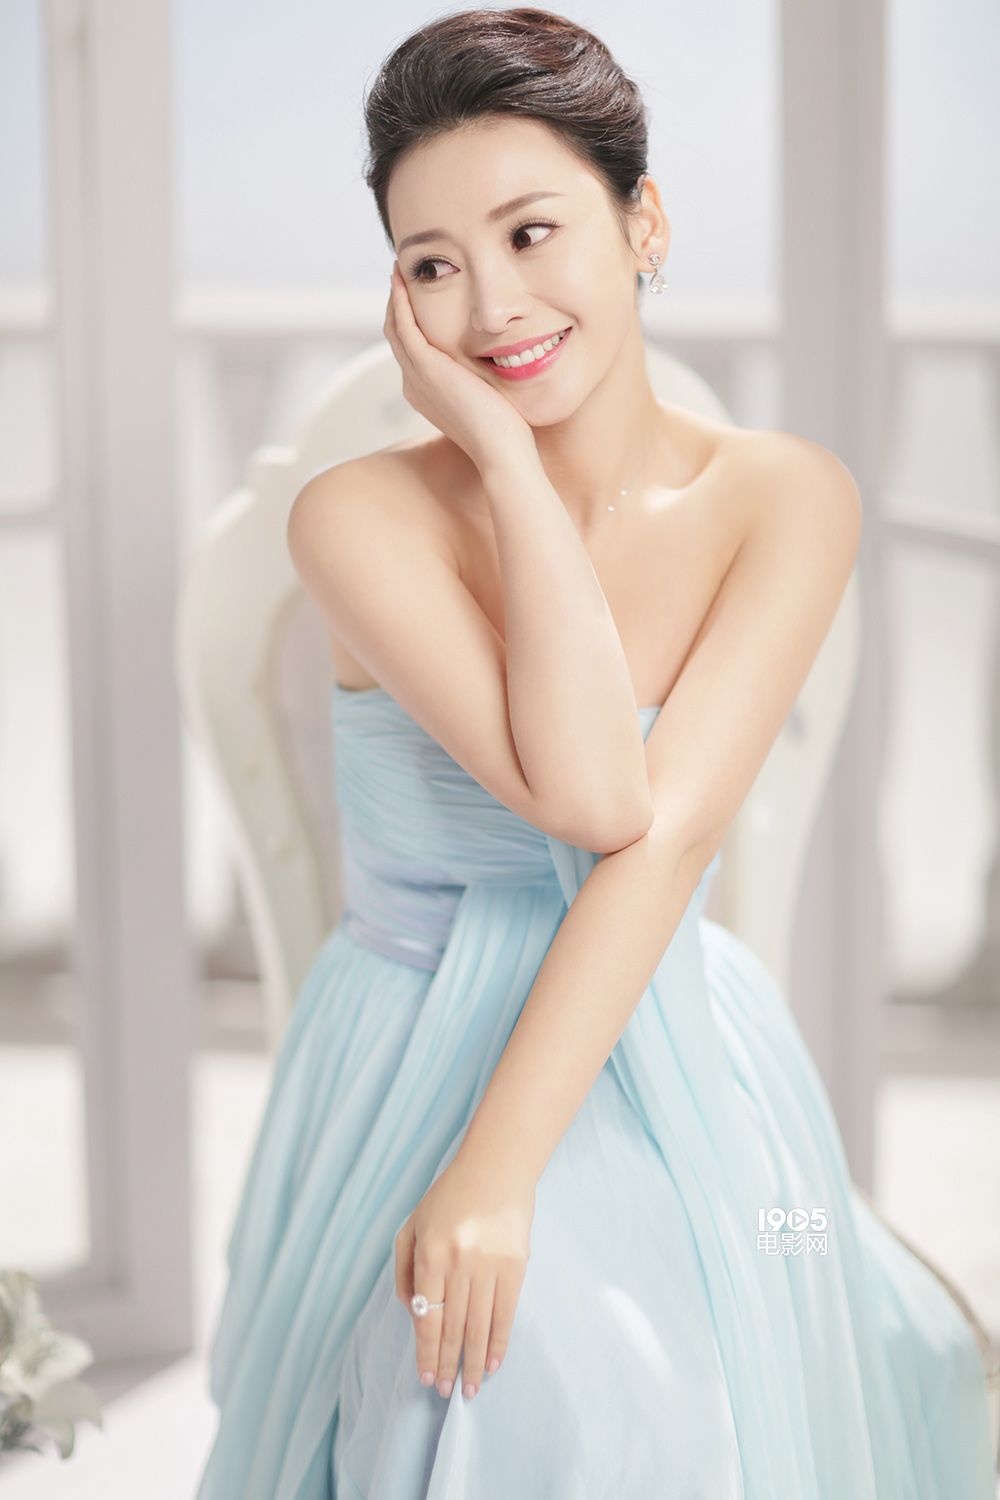 某护肤品牌电视广告,她先后换上淡蓝纱质裹胸裙和贴身白色深v裙出镜